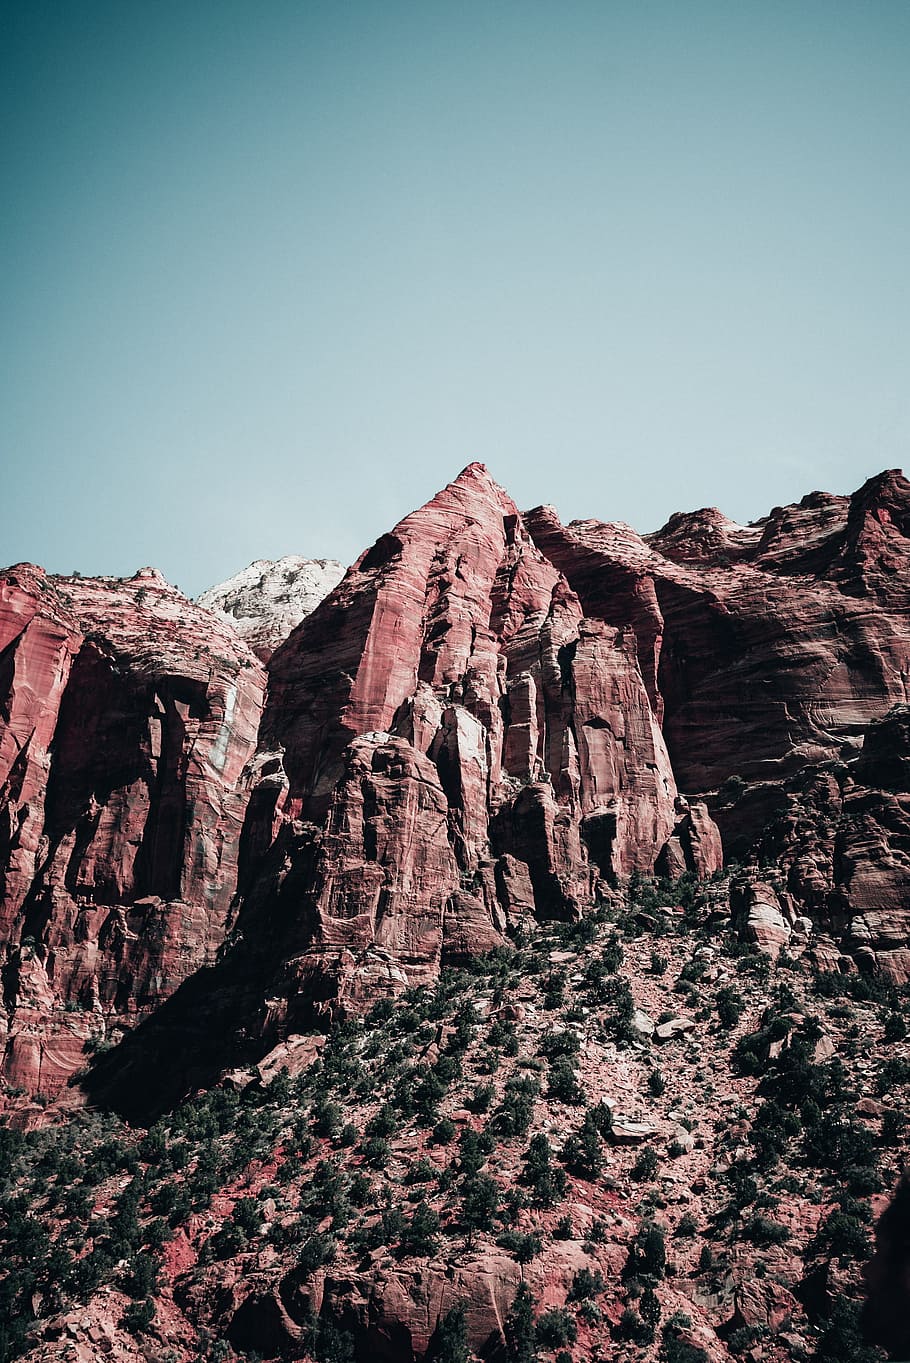 Gran, picos de arenisca del cañón, claro, brillante, luz solar, Aventura, Arizona, Cañón, Desierto, Erosión